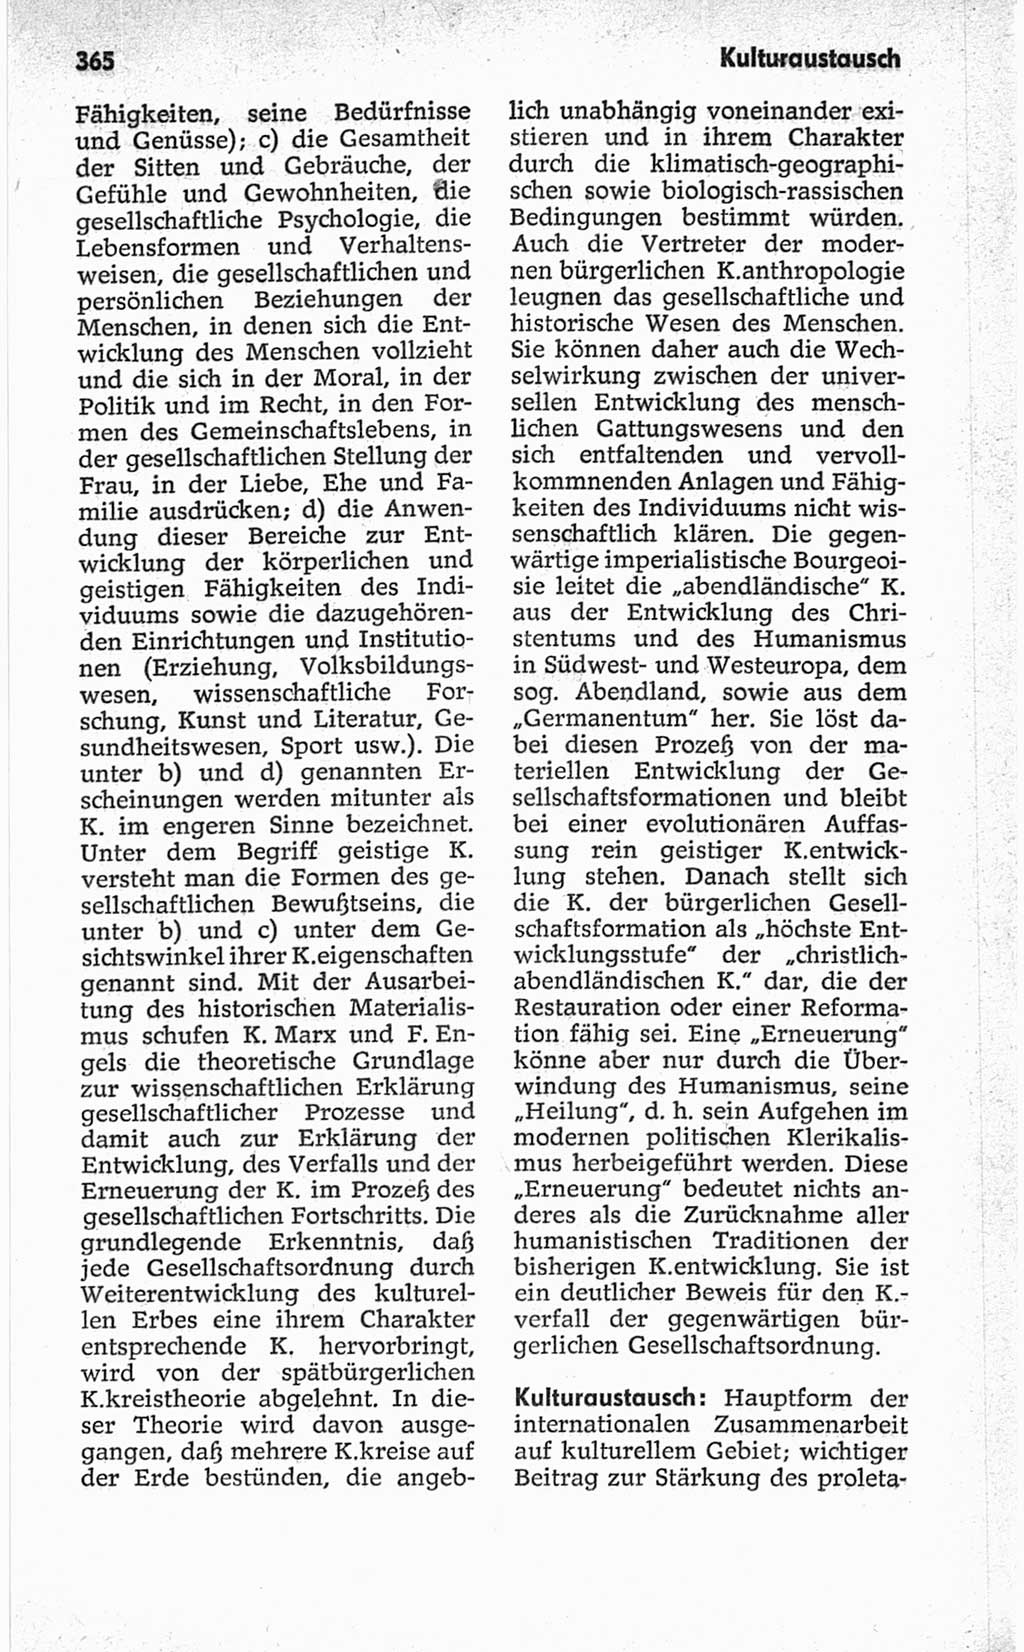 Kleines politisches Wörterbuch [Deutsche Demokratische Republik (DDR)] 1967, Seite 365 (Kl. pol. Wb. DDR 1967, S. 365)